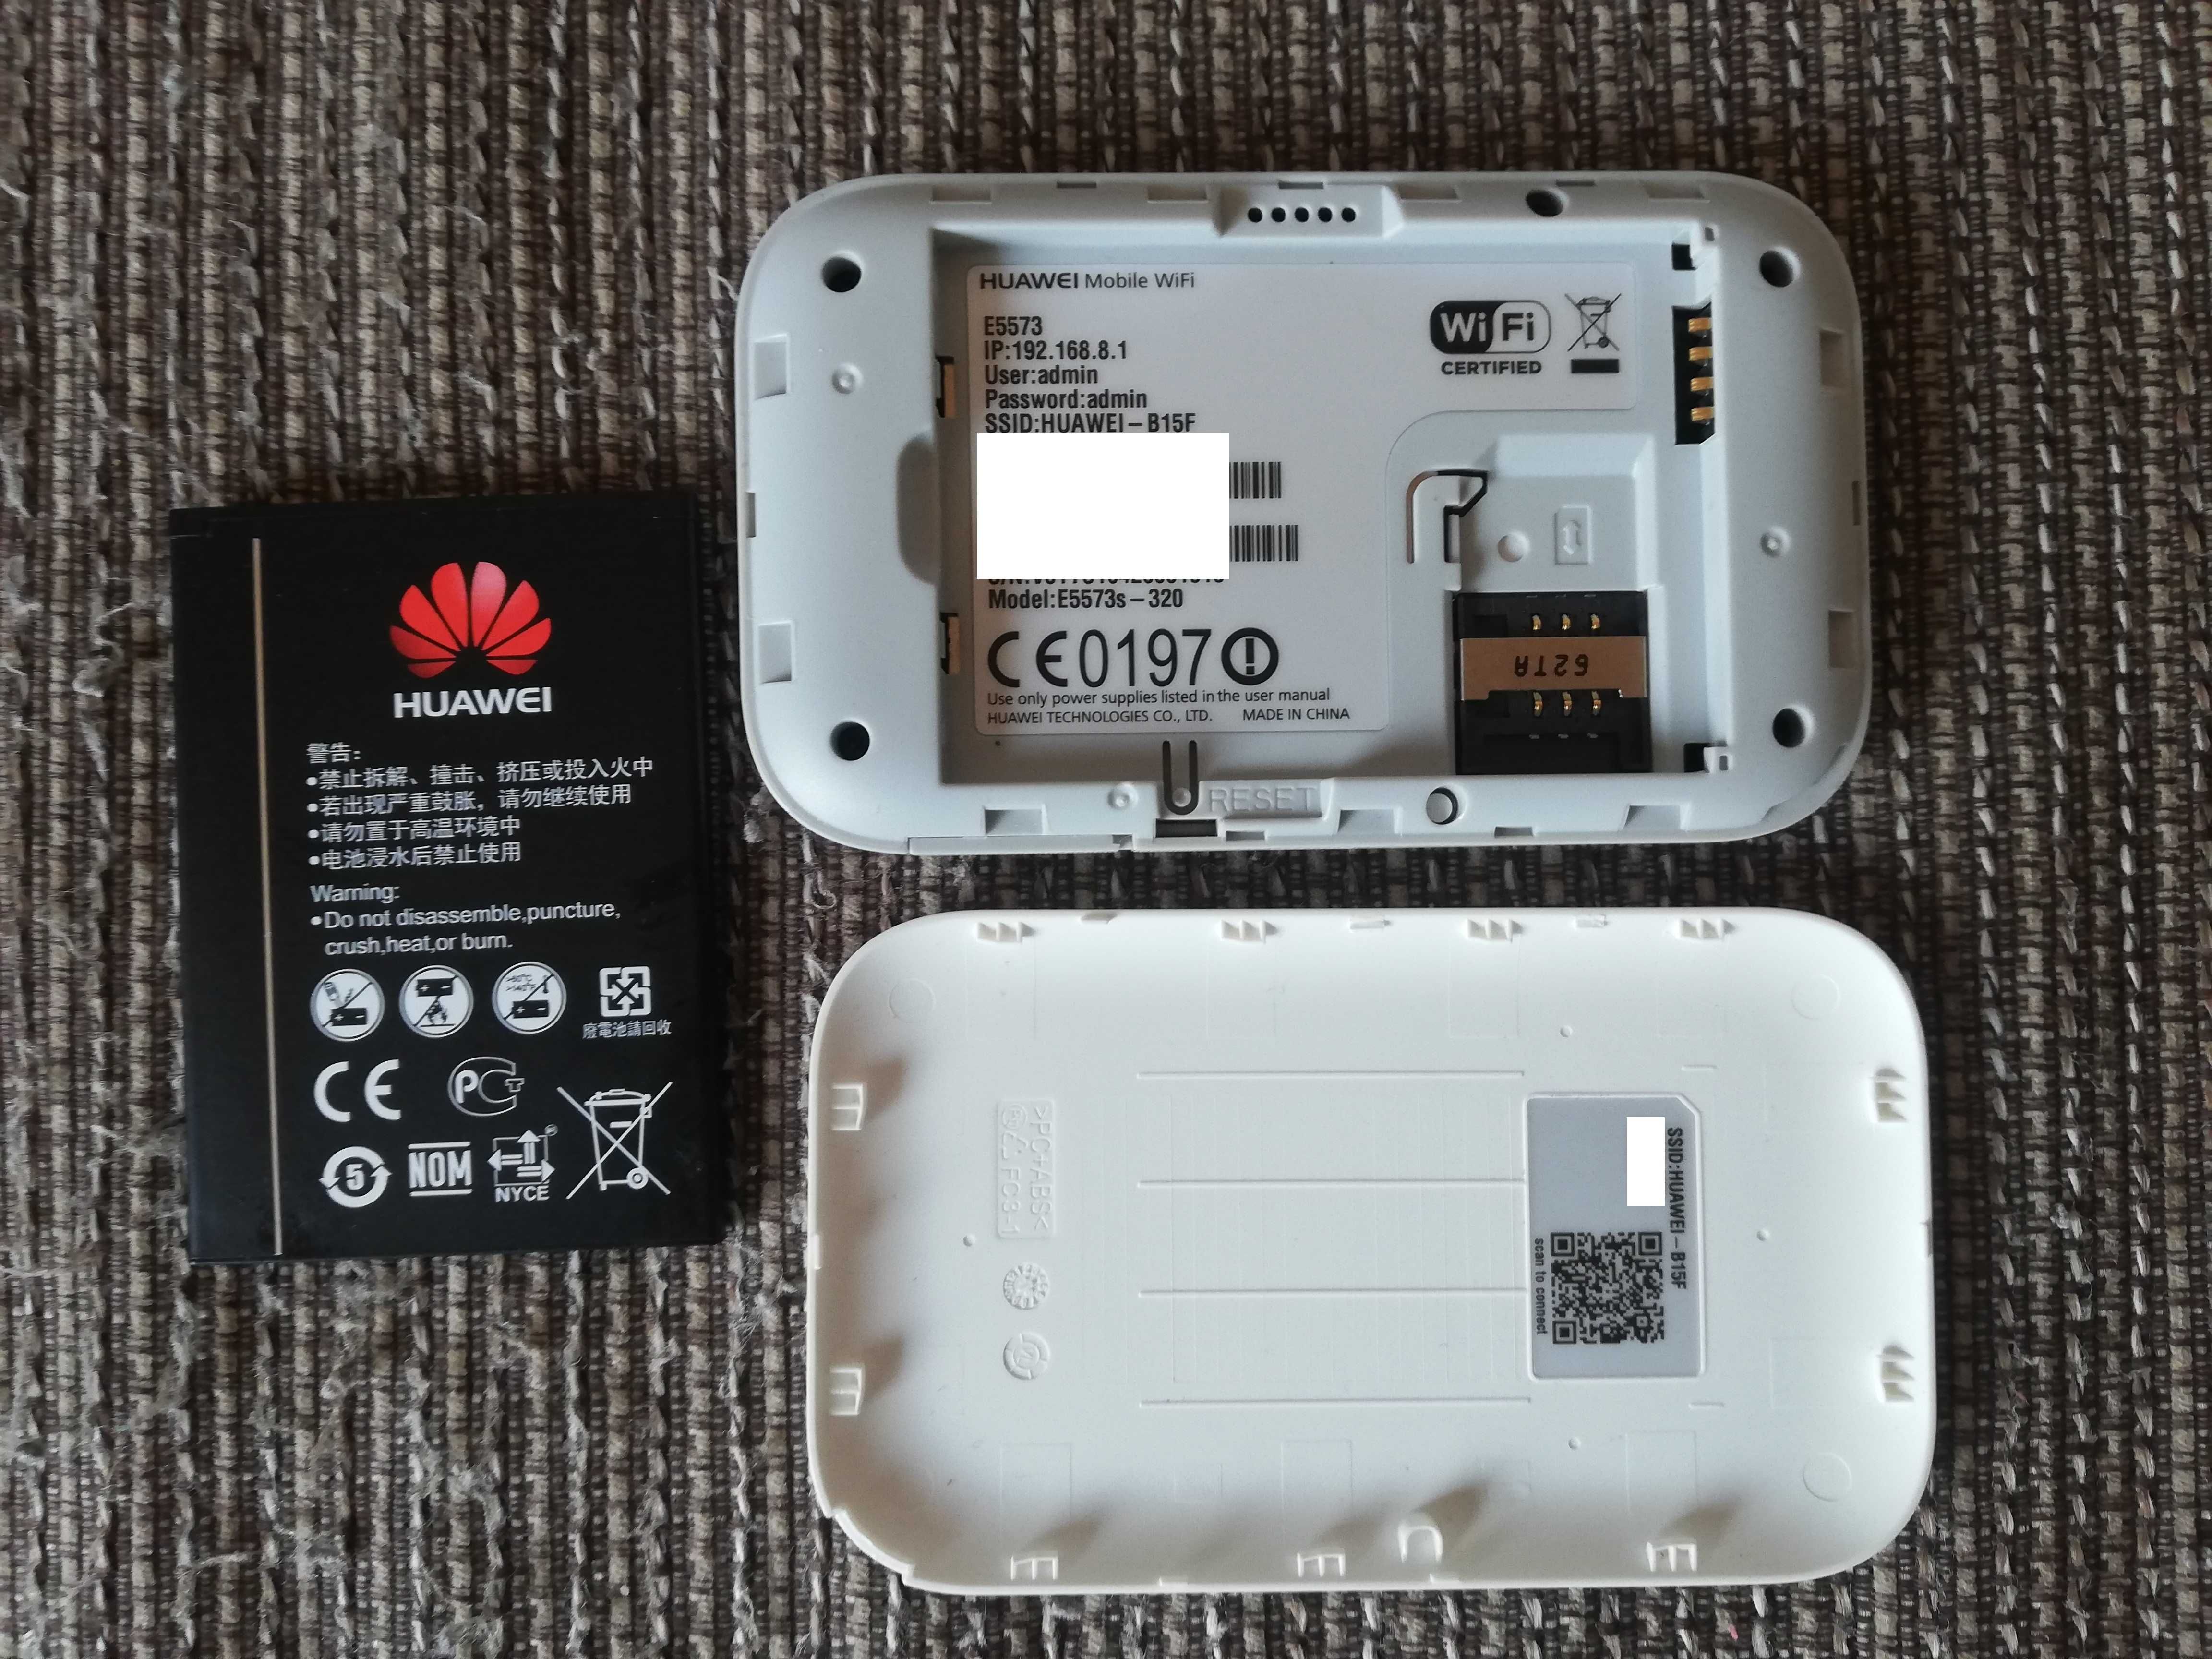 4G Huawei E5573 мобилен рутер работи с всички оператори